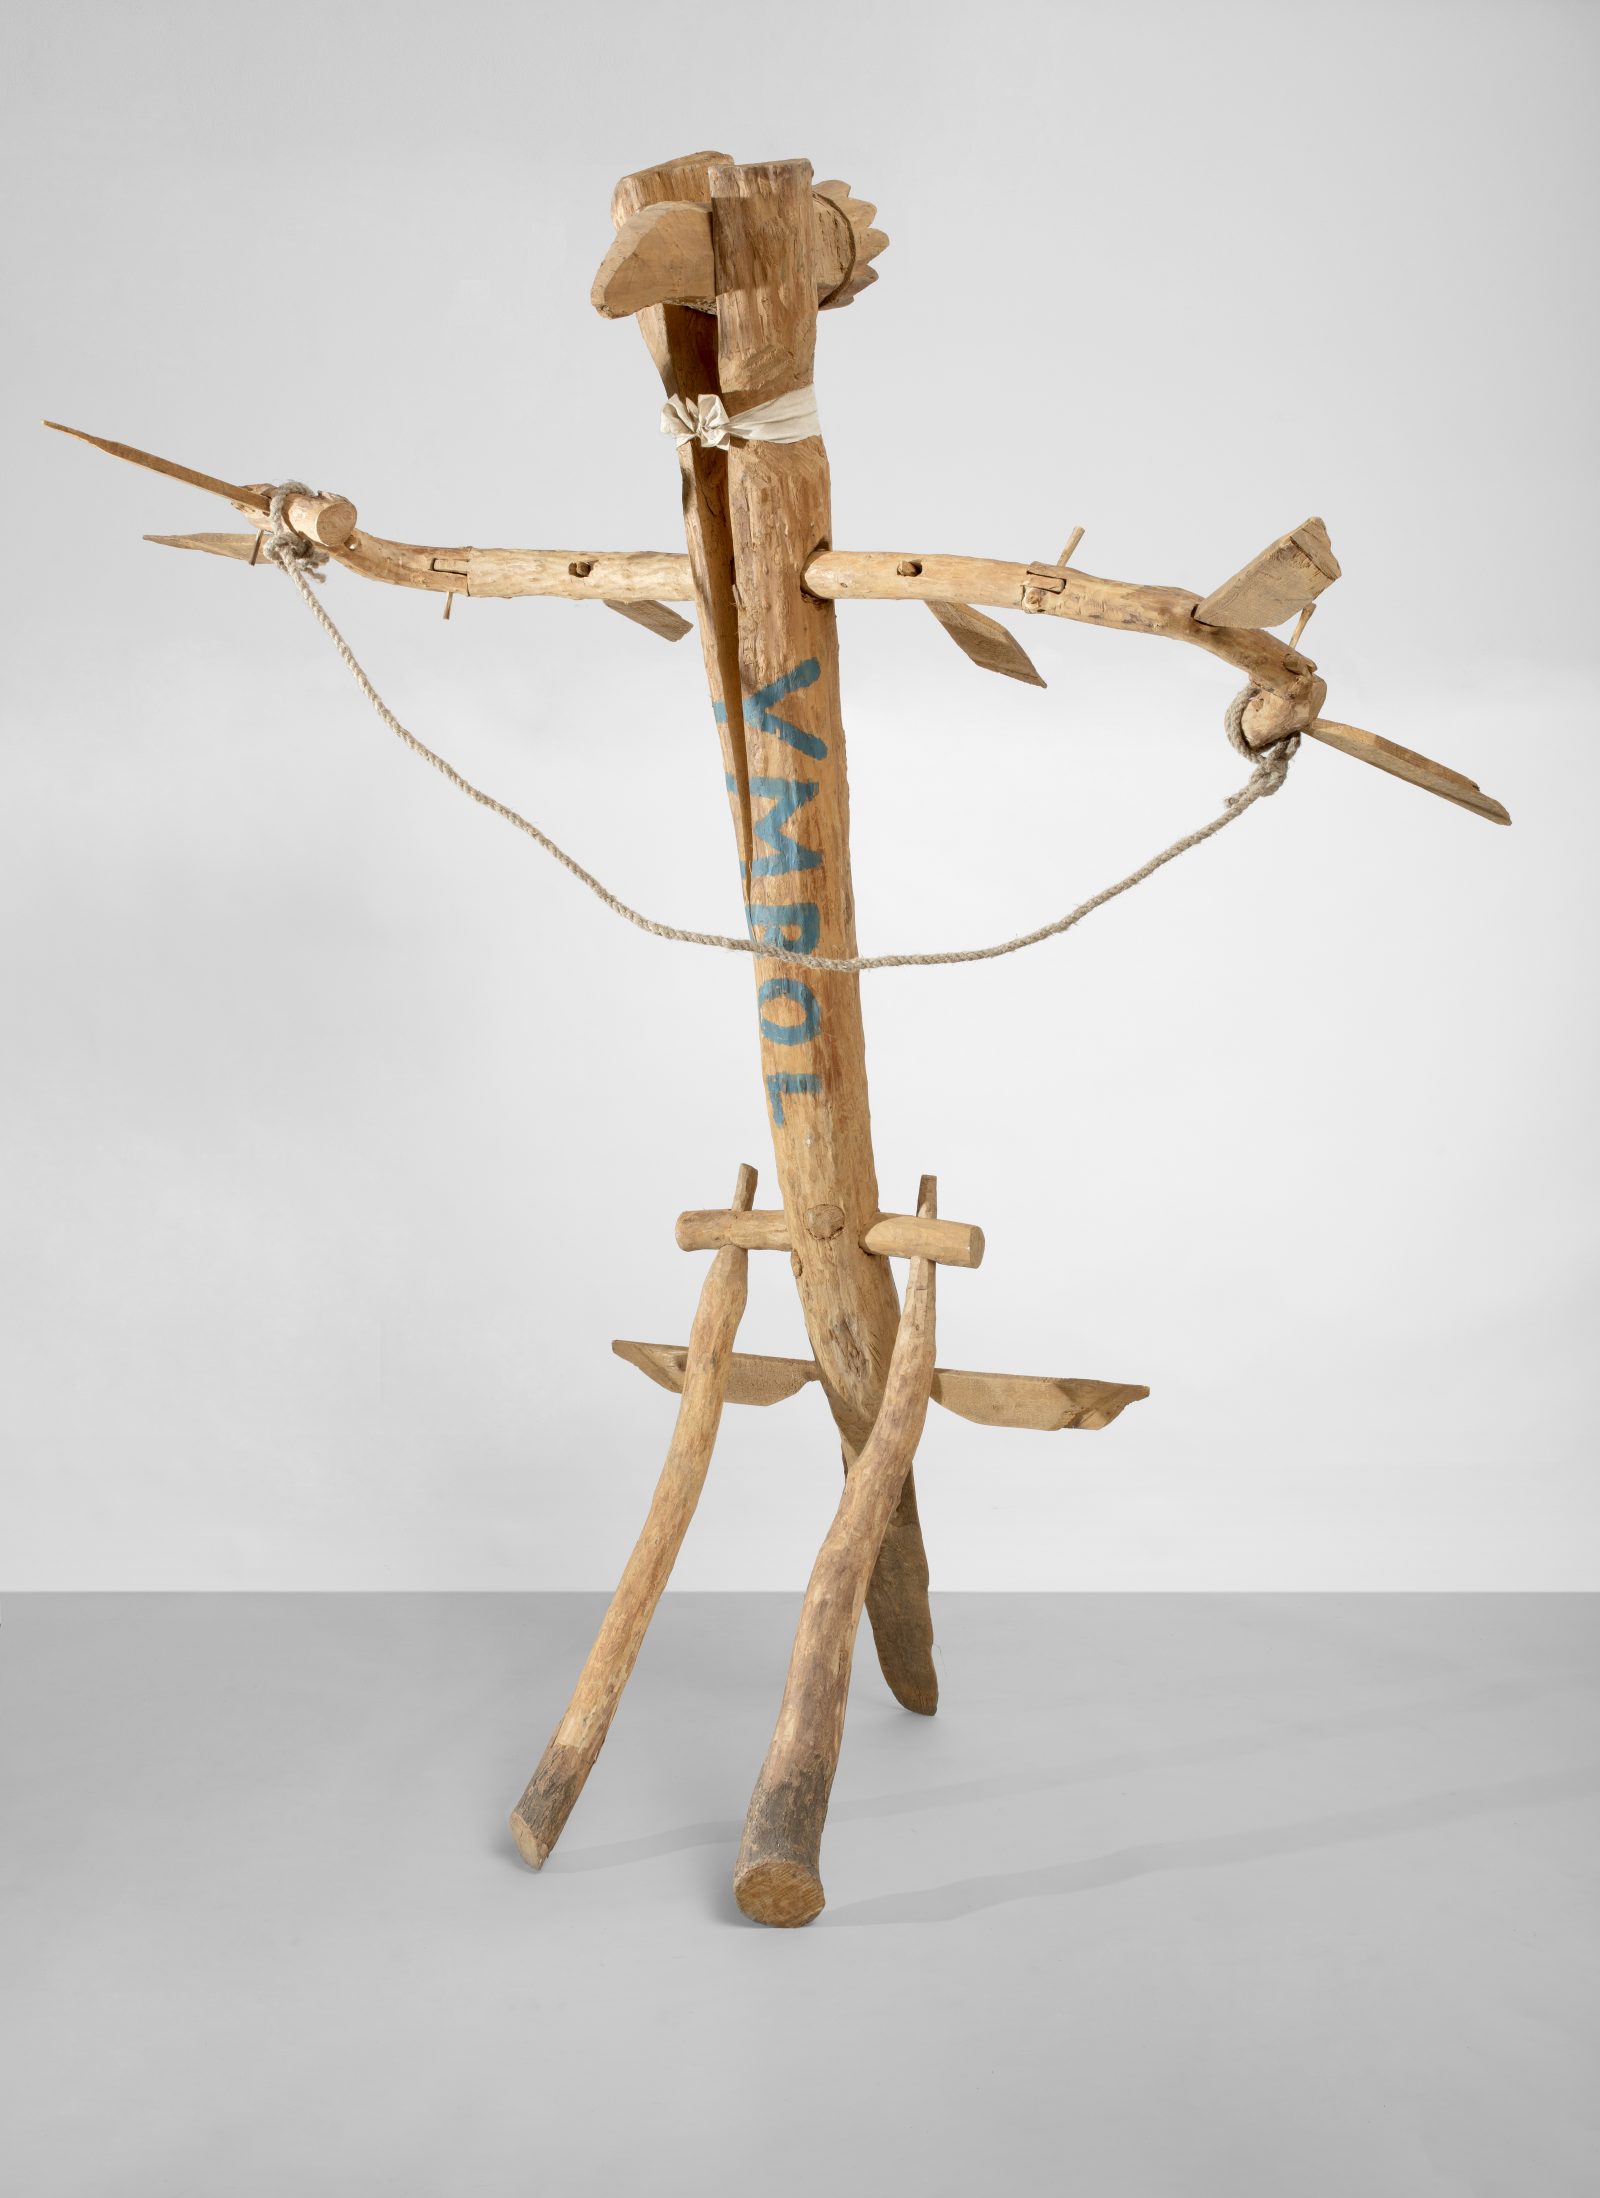 Jerzy Bereś
Ymbol
1987
wood, hemp rope, acrylic
270 × 240 × 180 cm